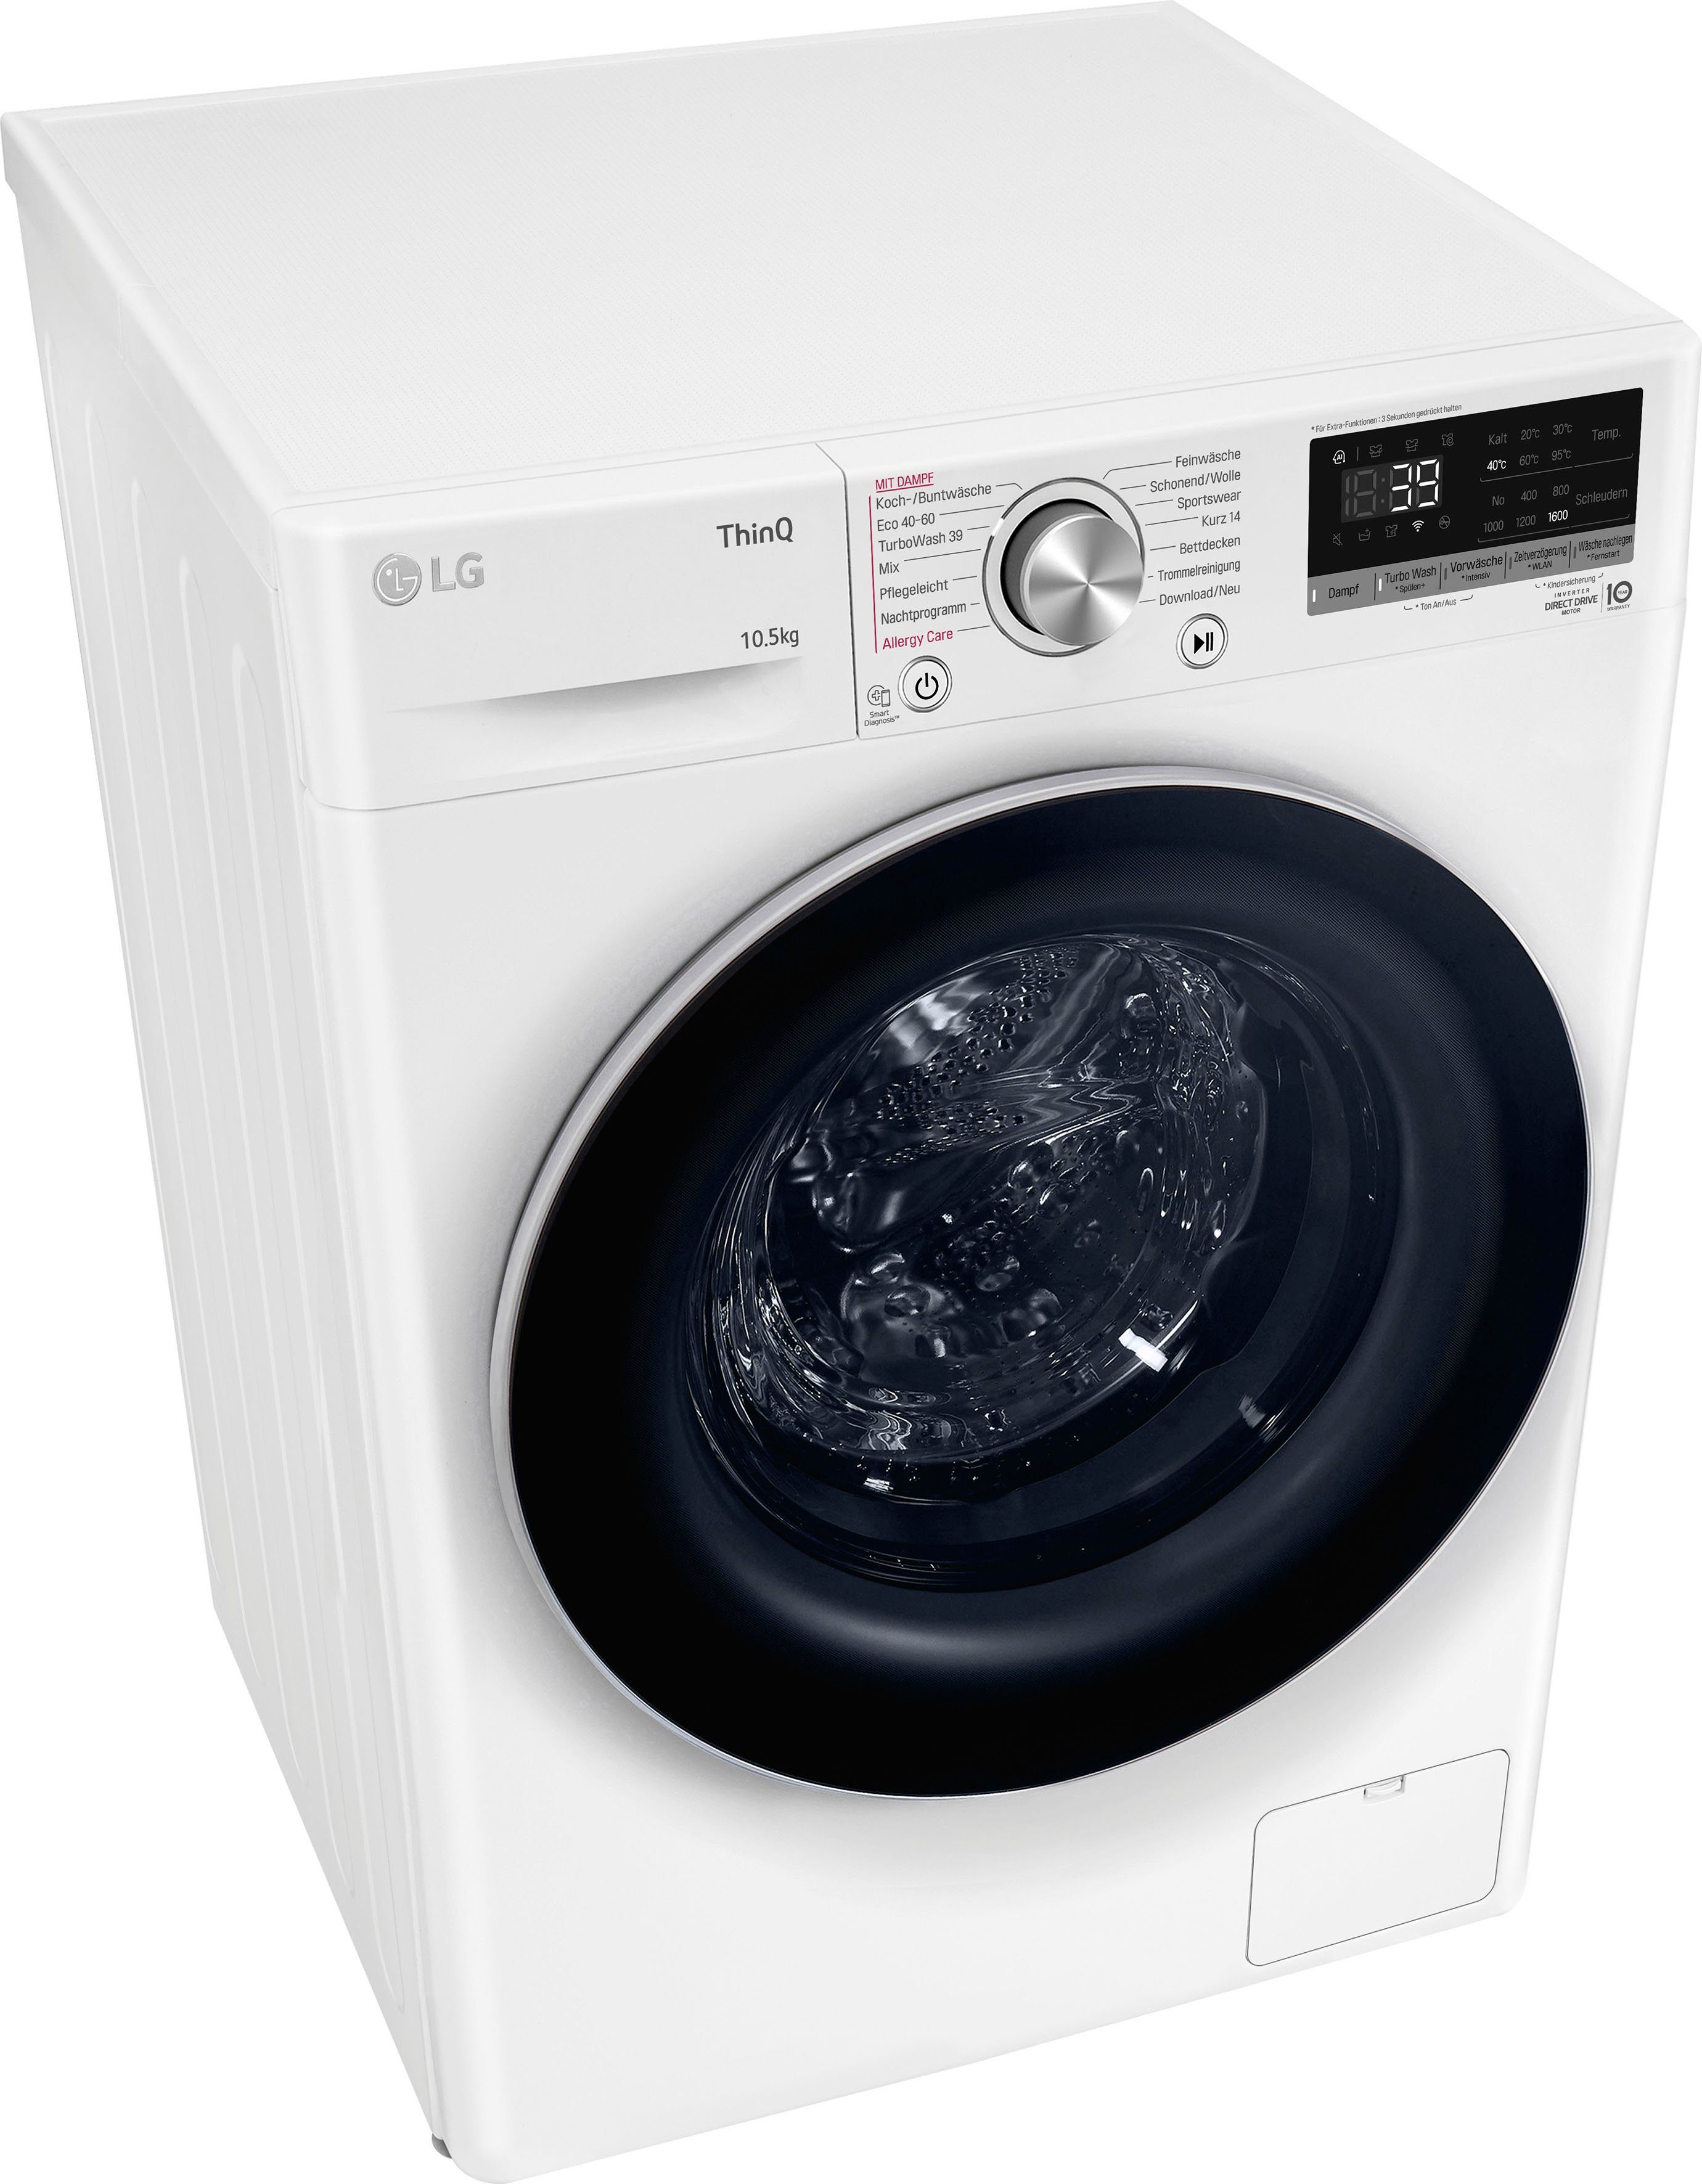 kg, nur Waschmaschine U/min, Minuten in 39 10,5 LG F6WV710P1, TurboWash® - Waschen 1600